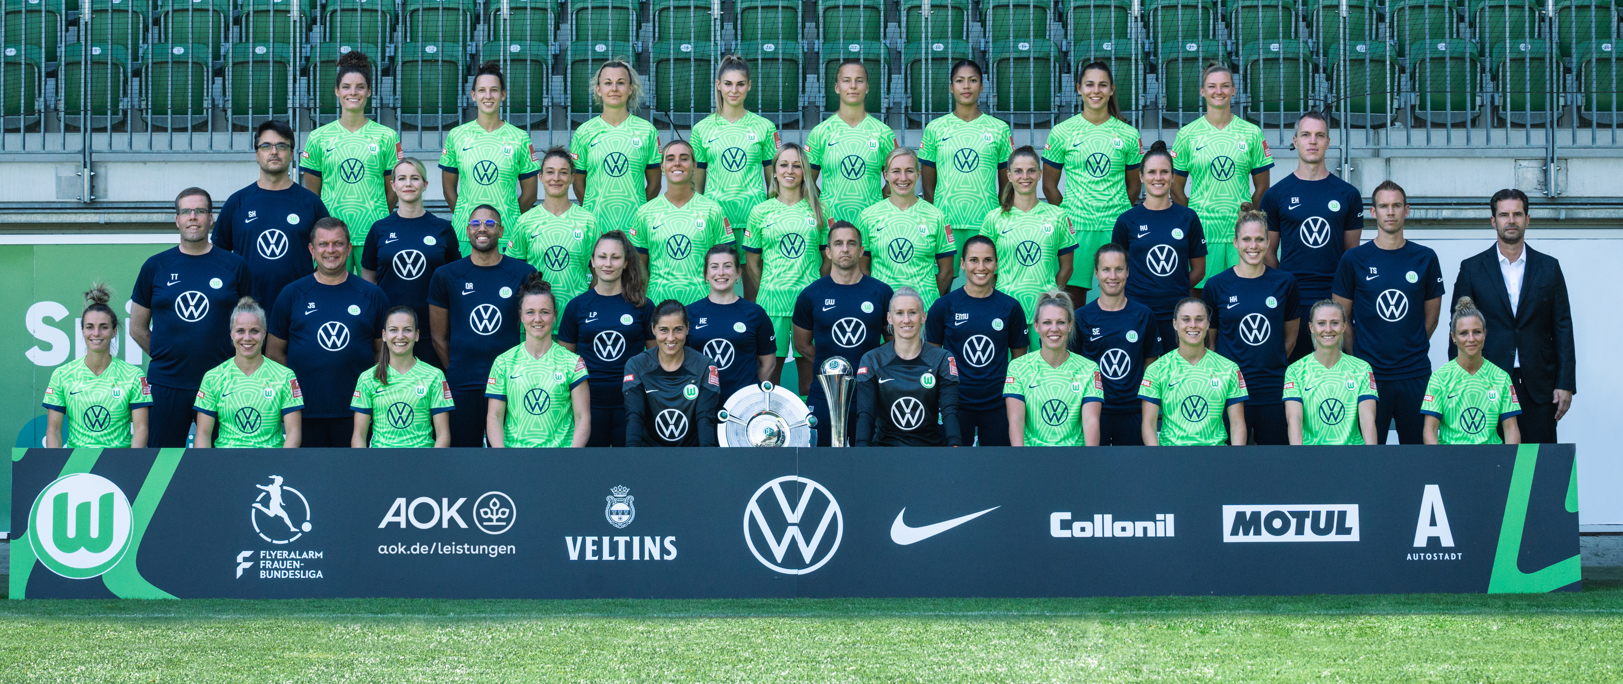 Bild der Frauen Mannschaft des VFL Wolfsburgs